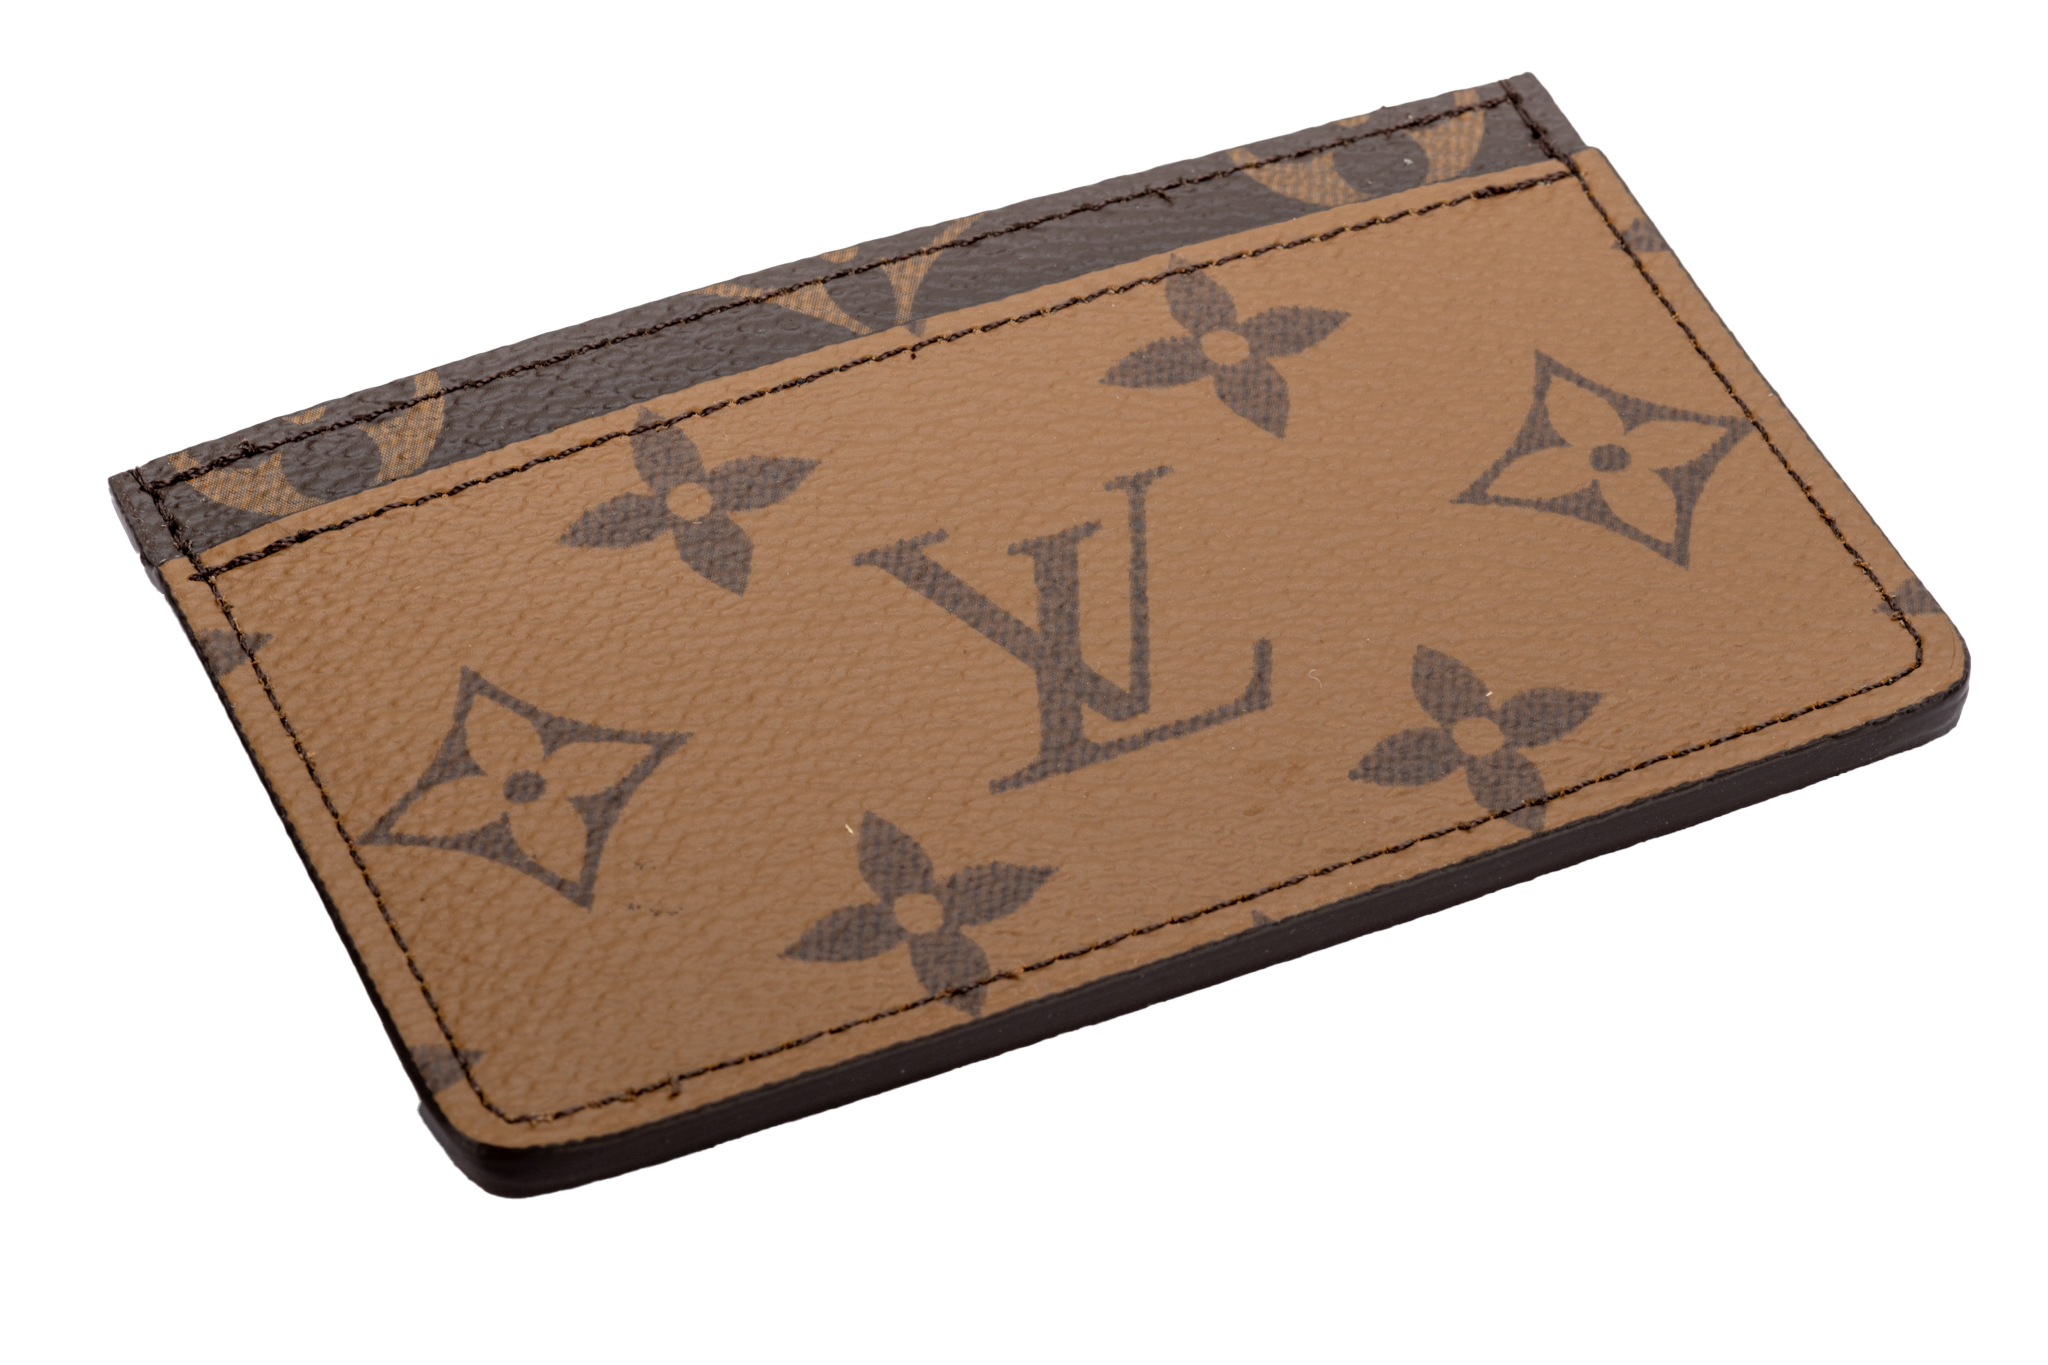 Louis Vuitton 2 Tone Credit Card Case